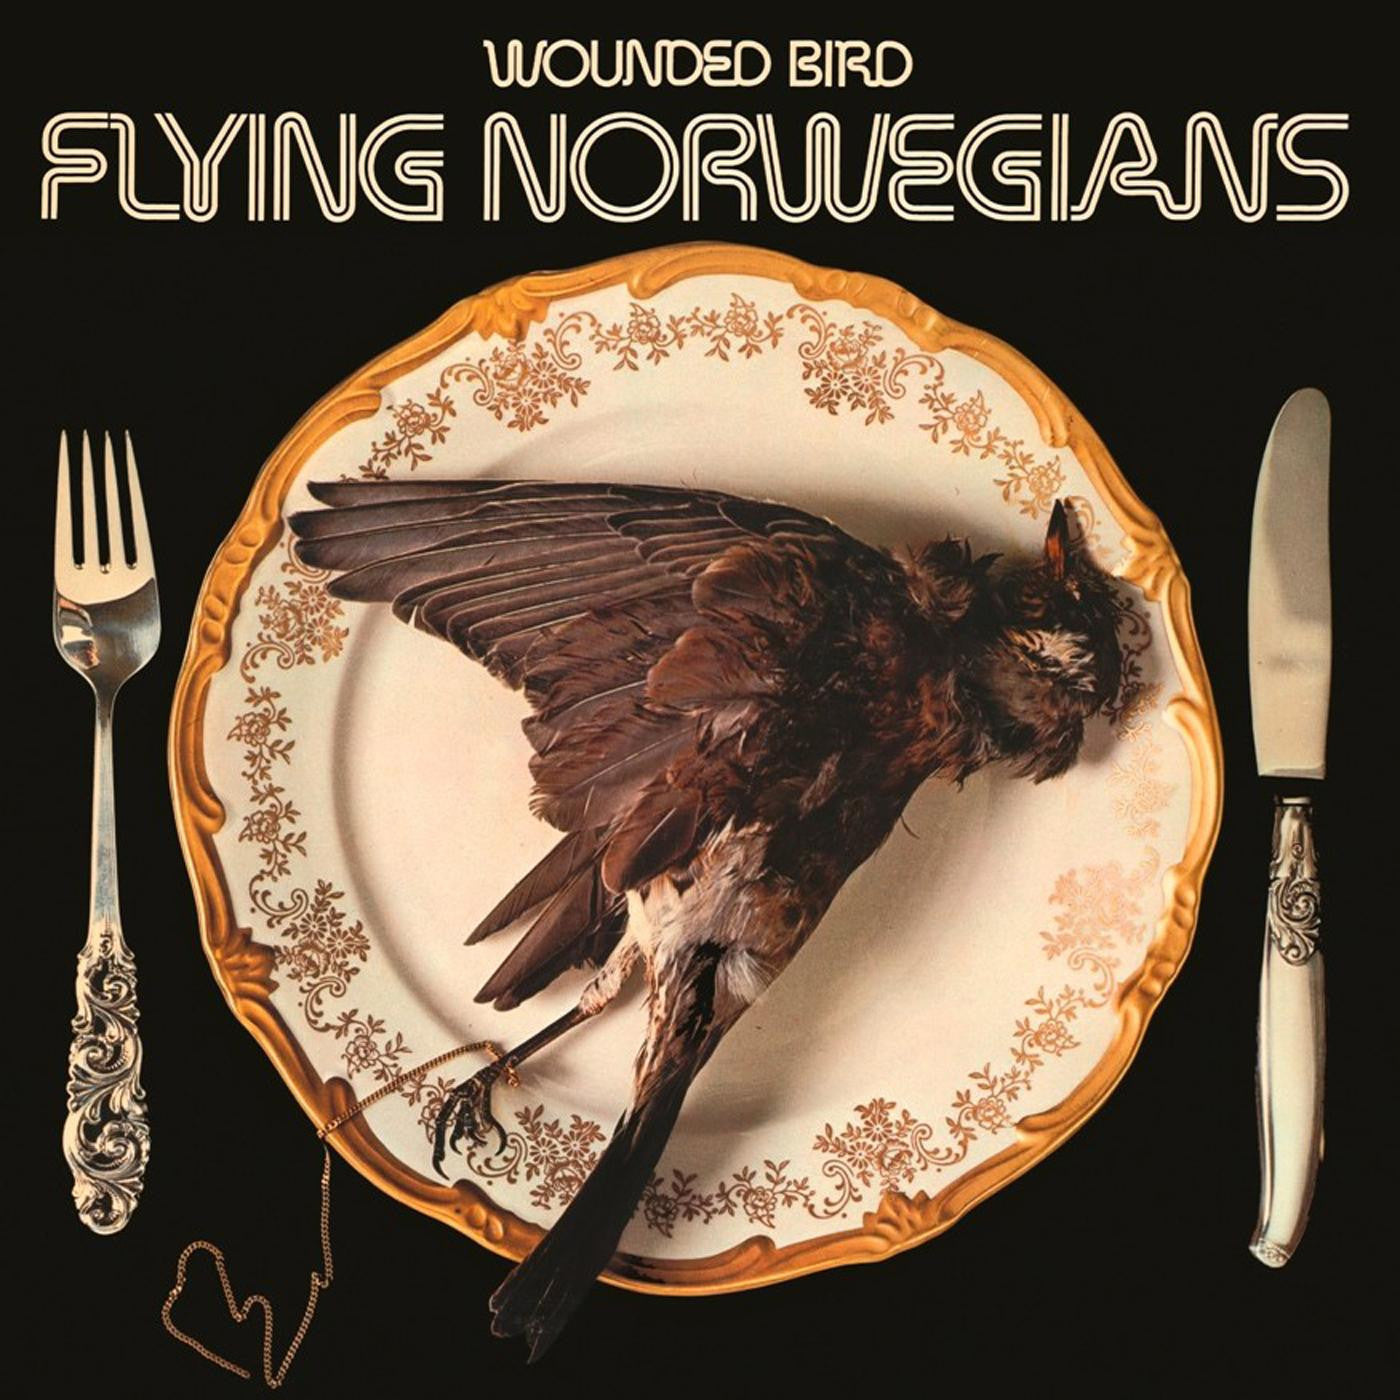 Flying Norwegians - Wounded Bird (Vinyl LP)